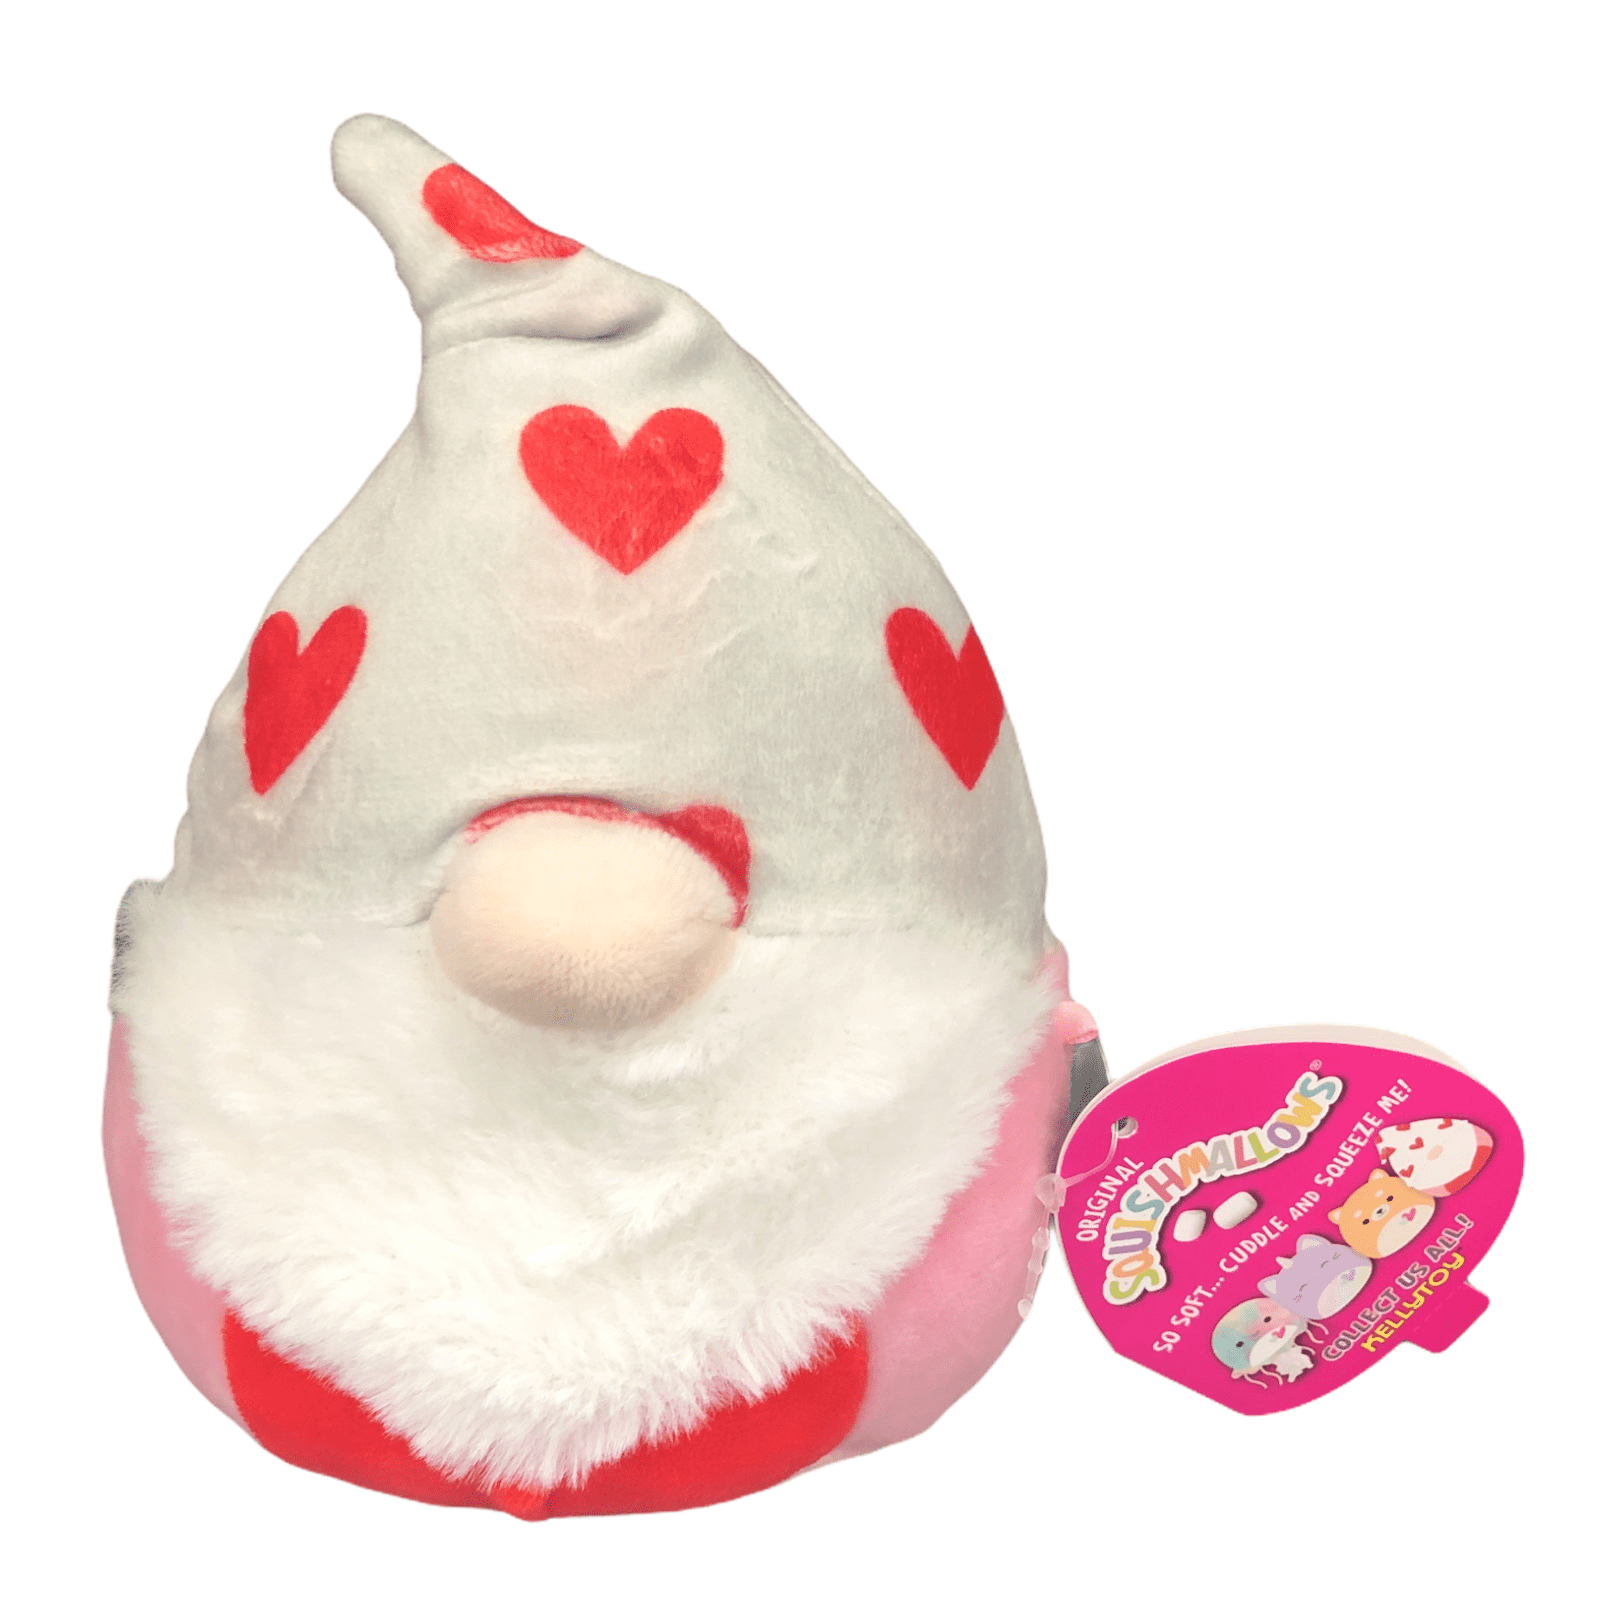 Squishmallow Remmy Gnome 5" 2021 Valentine Day Kellytoy Plush 